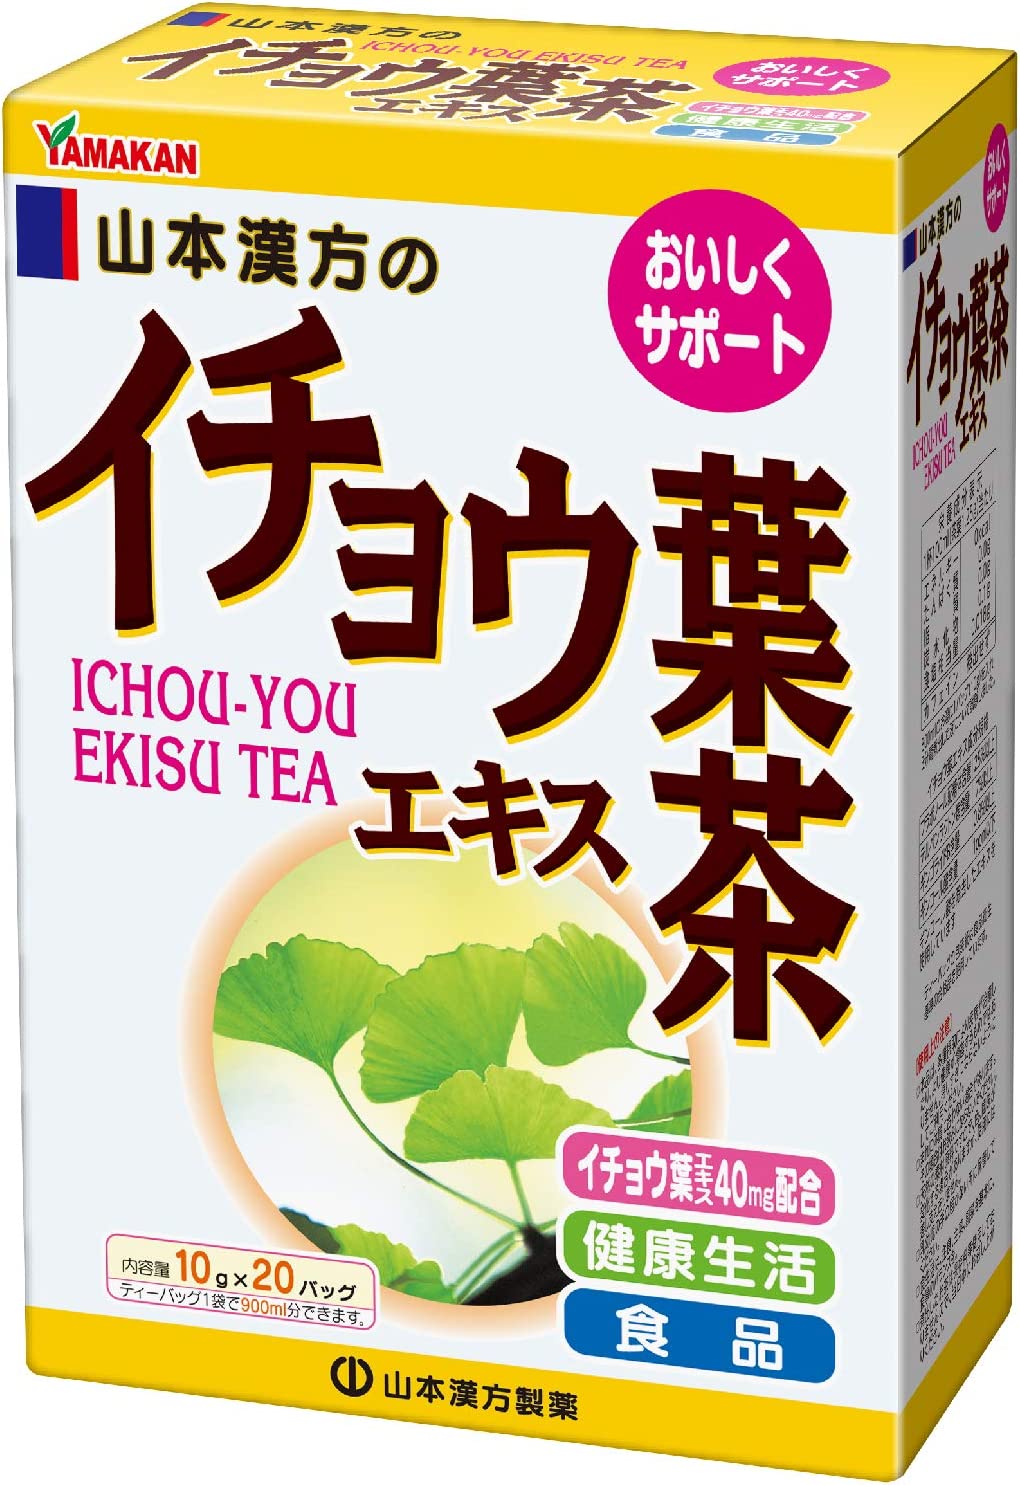 山本漢方 イチョウ葉エキス茶 〈ティーバッグ〉 10g×20包